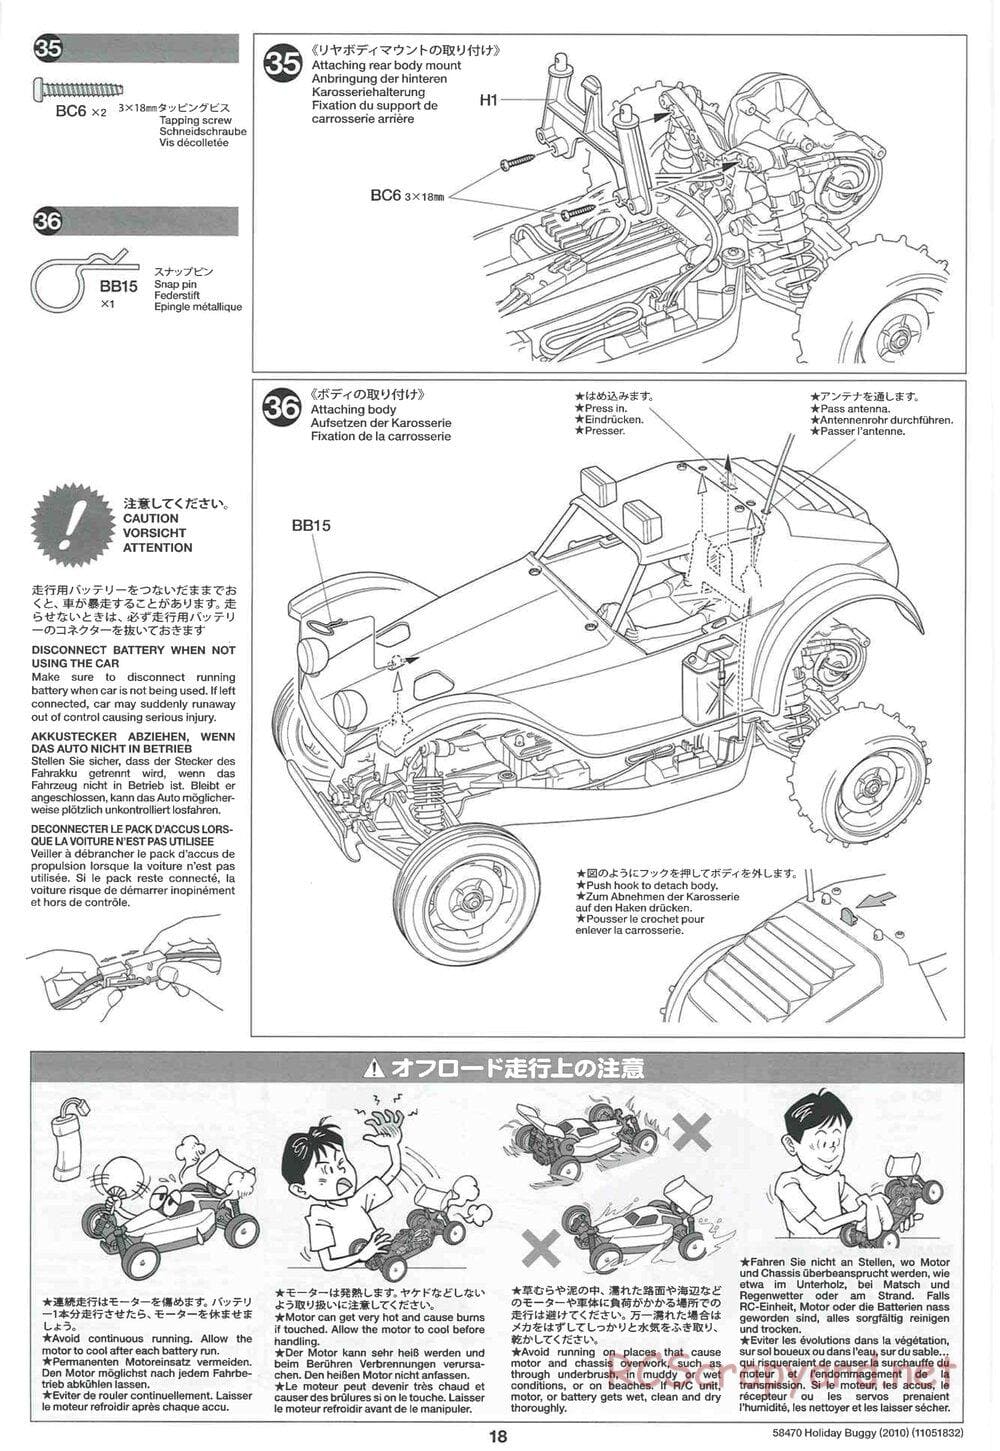 Tamiya - Holiday Buggy 2010 Chassis - Manual - Page 18